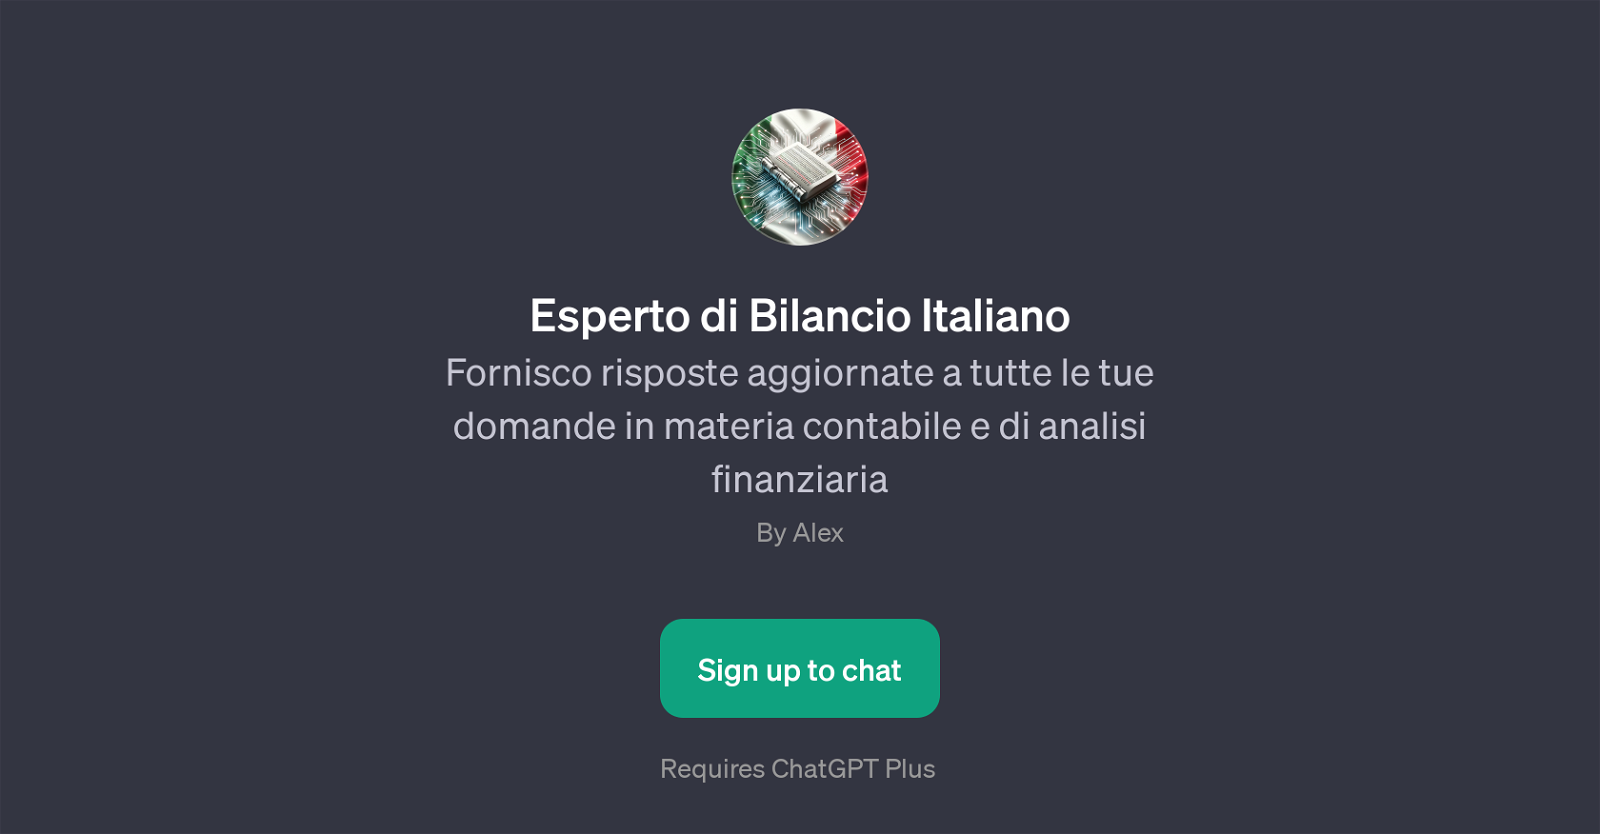 Esperto di Bilancio Italiano website